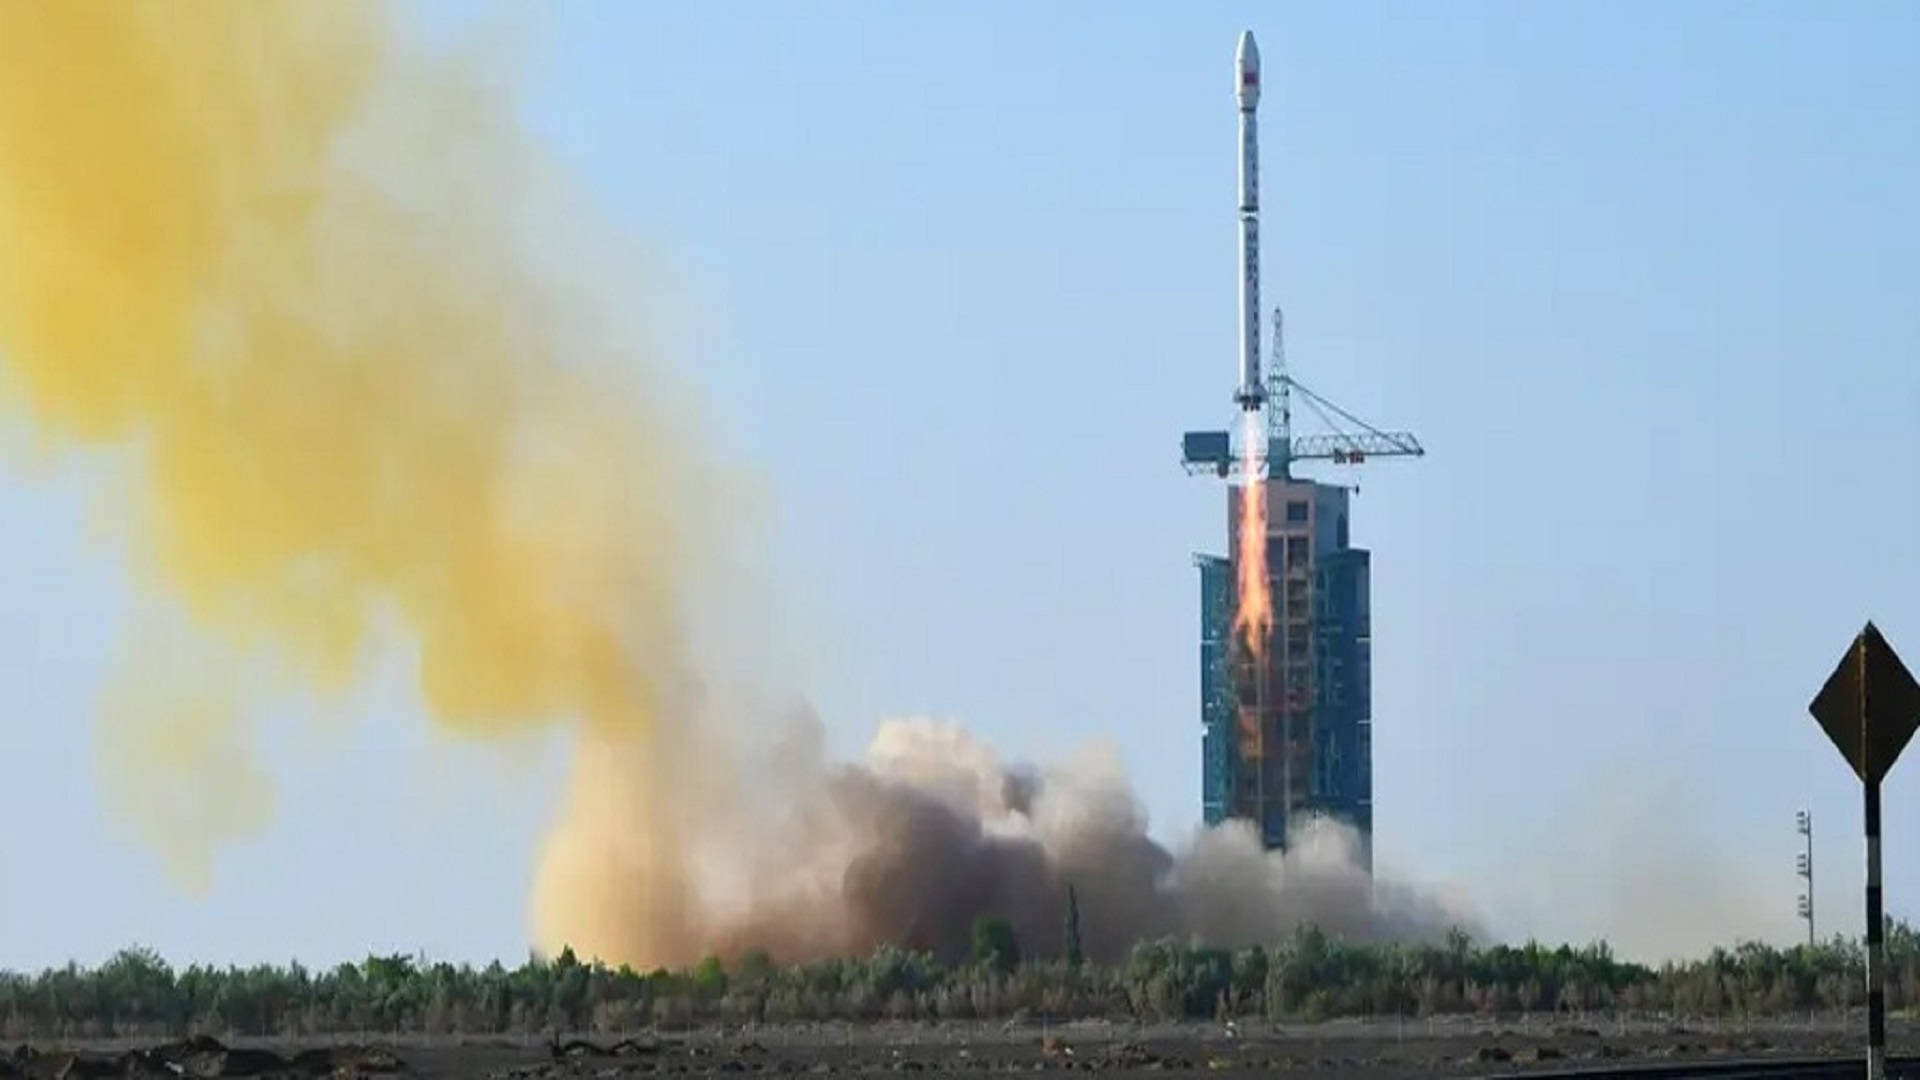 اسپیس ایکس چینی به طور تصادفی موشک پرتاب کرد و آن را به کوه های مجاور فرستاد